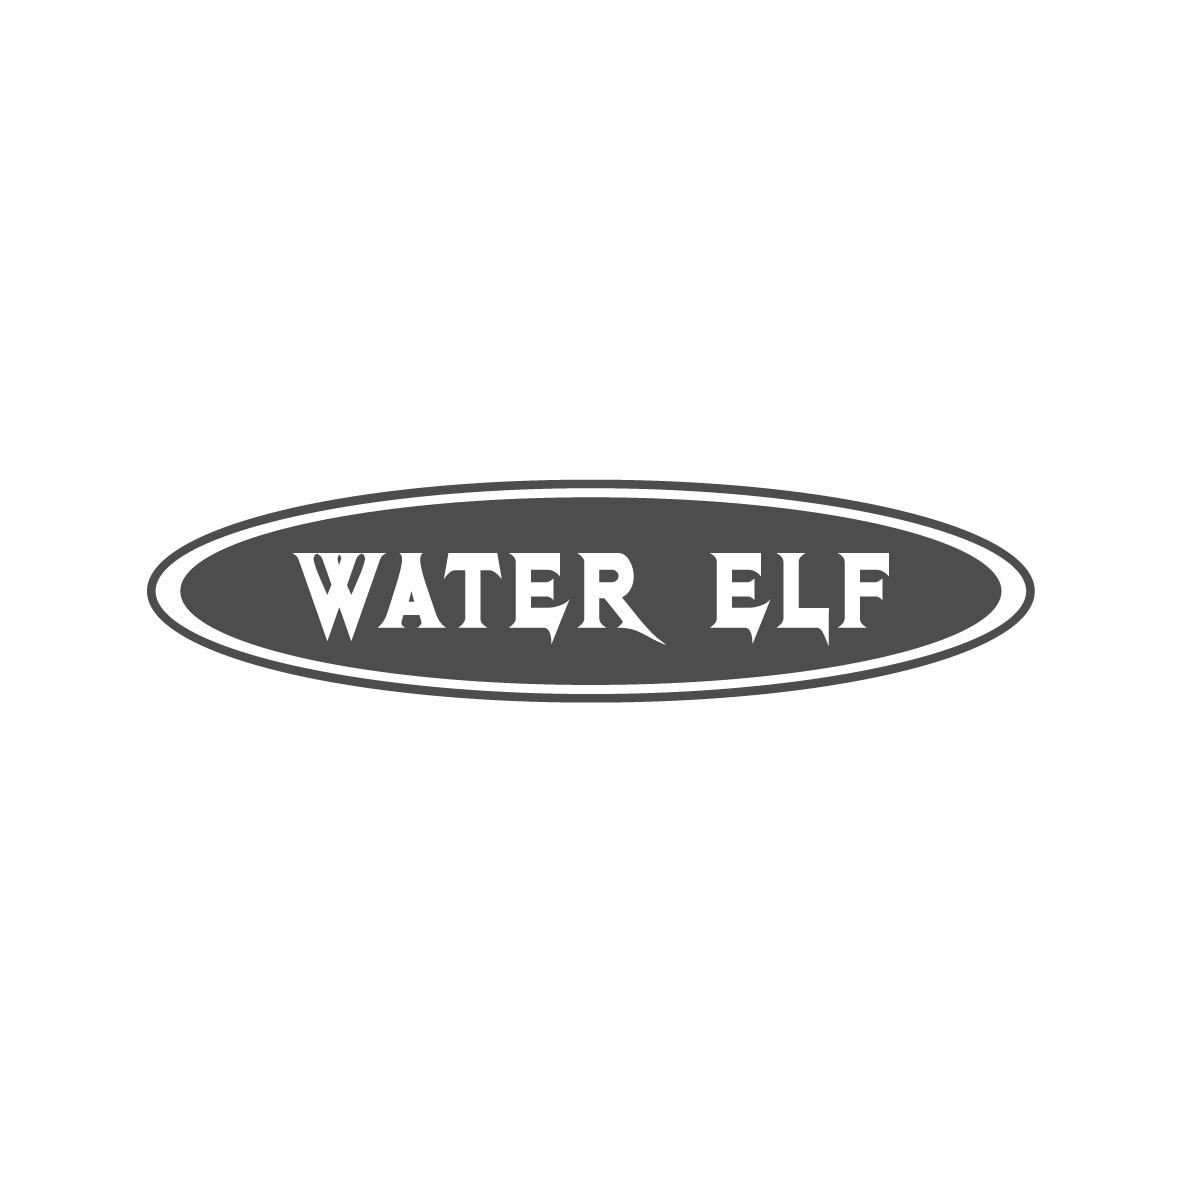 WATER ELF